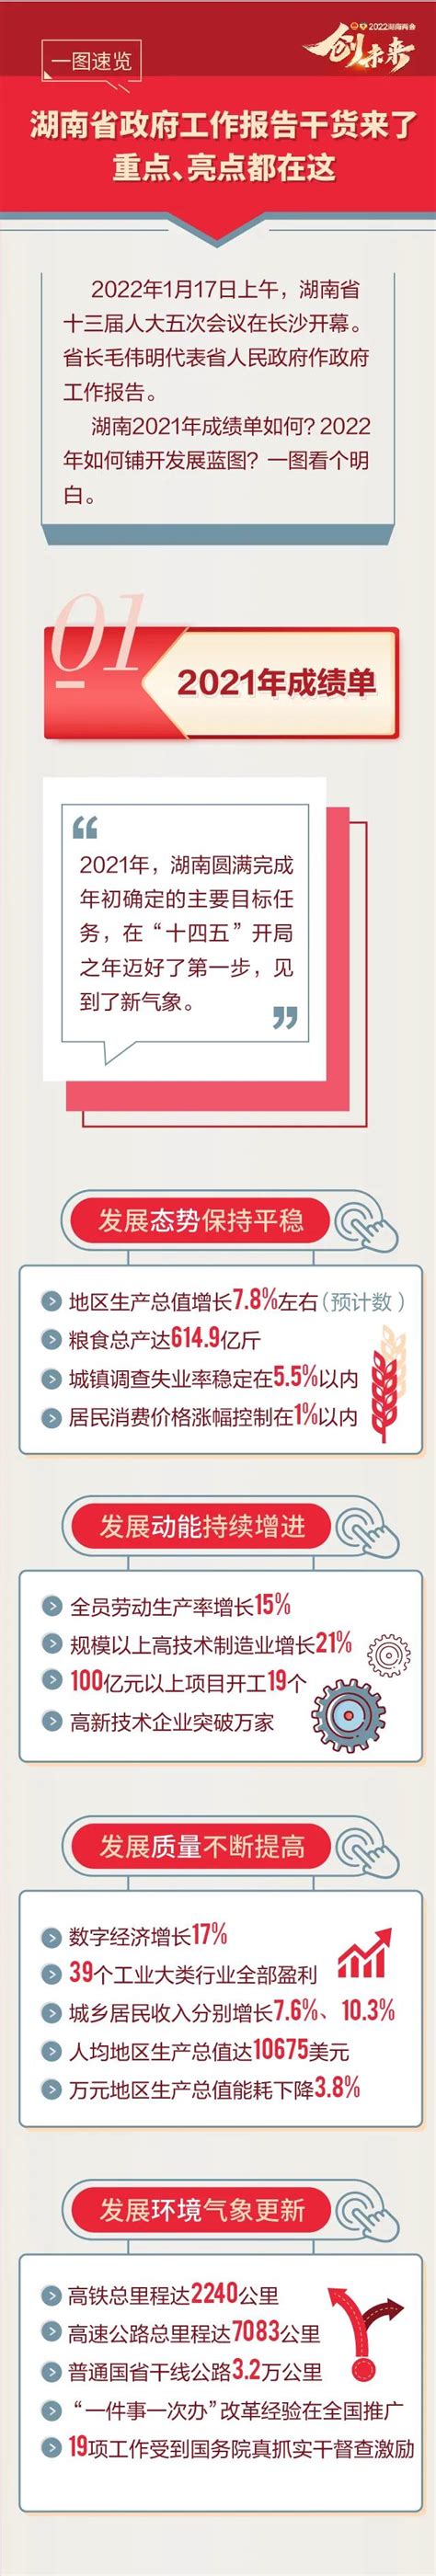 一图速览丨湖南省政府工作报告干货来了 重点、亮点都在这---湖南省房地产业协会官网